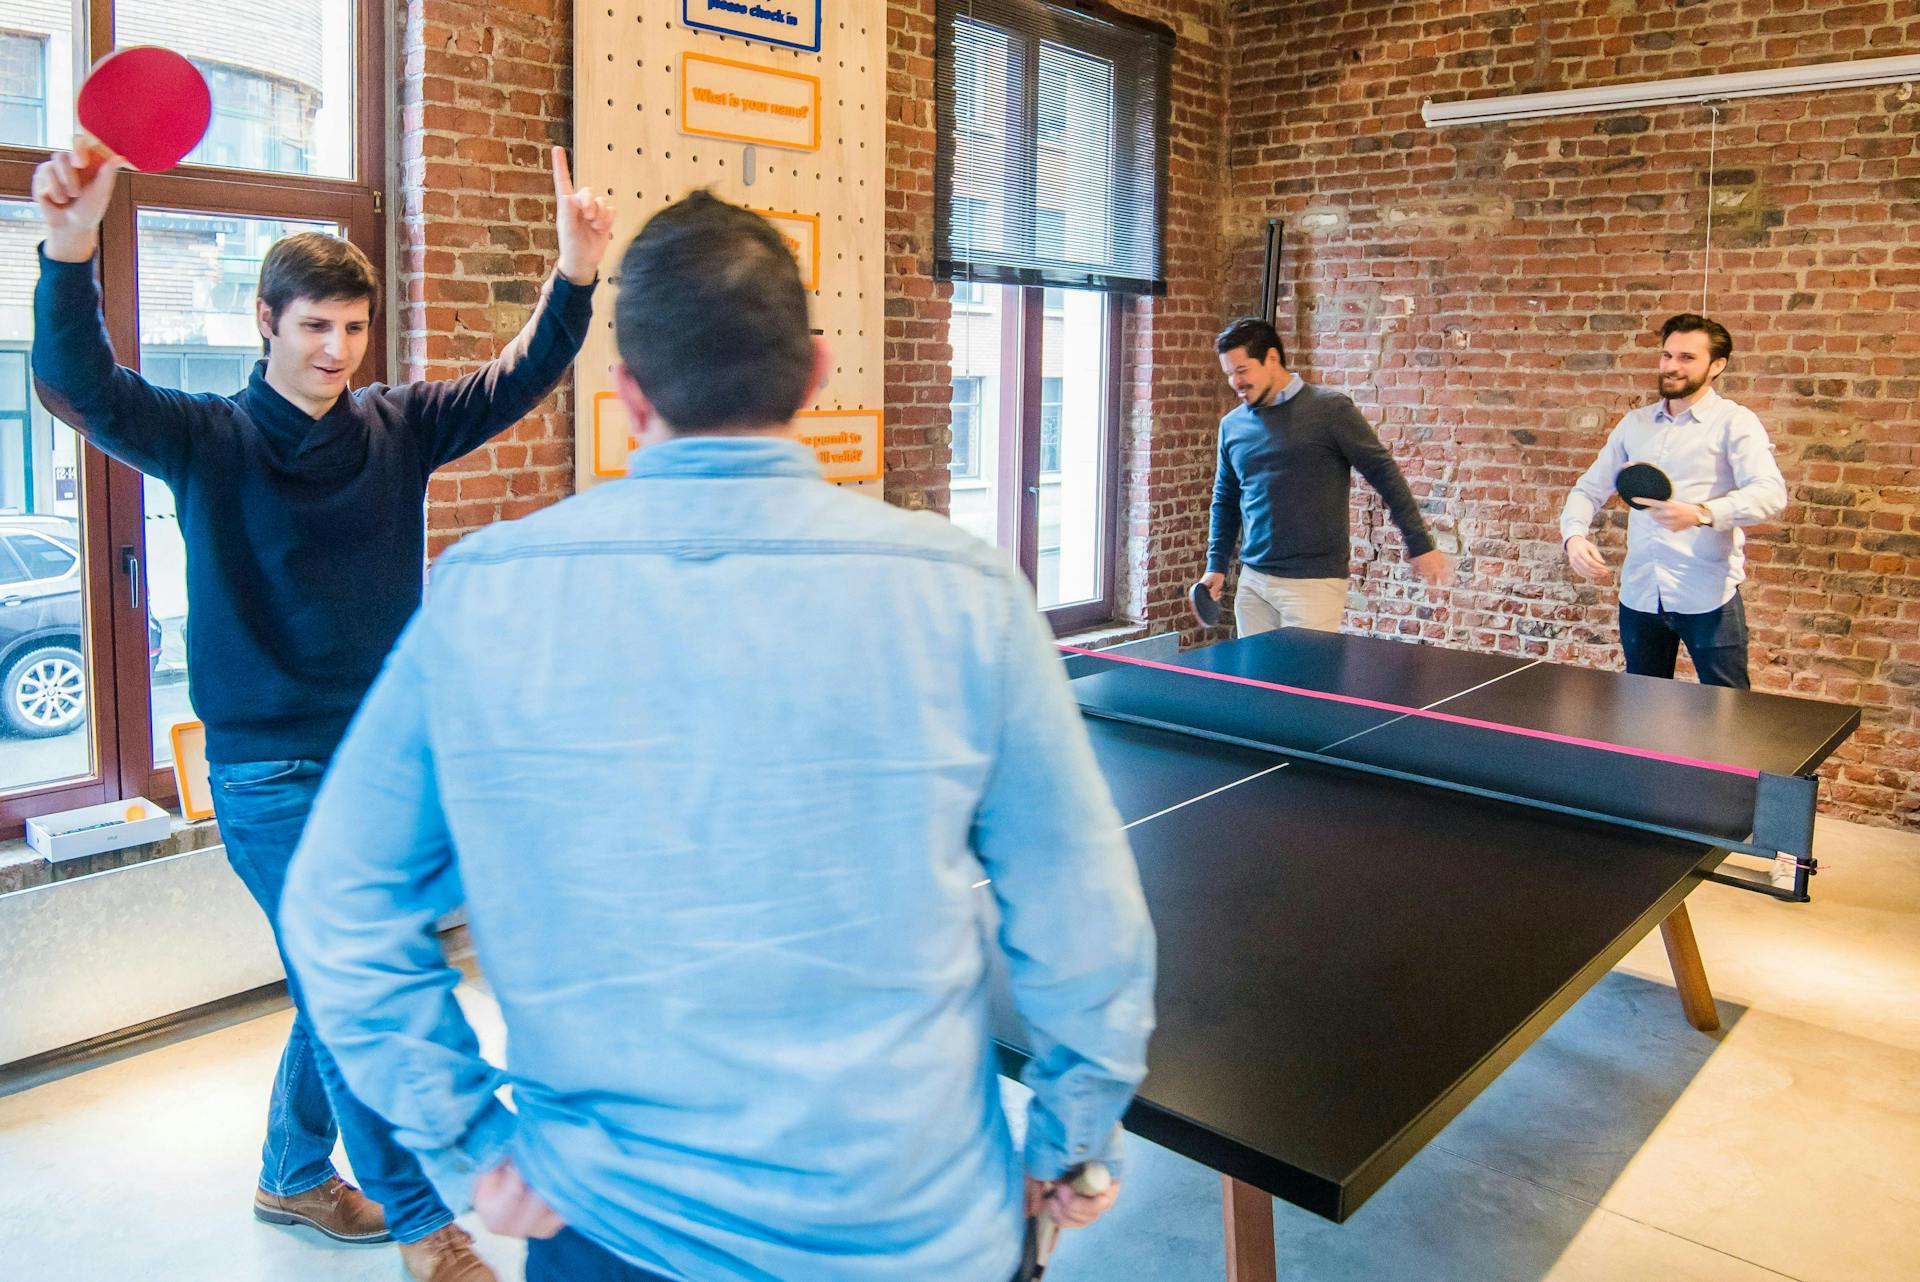 Vier mannen spelen ping-pong op kantoor. Dit is een voorbeeld van een activiteit die een goede bedrijfsreputatie opleverd en goede employee brand op kan leveren.